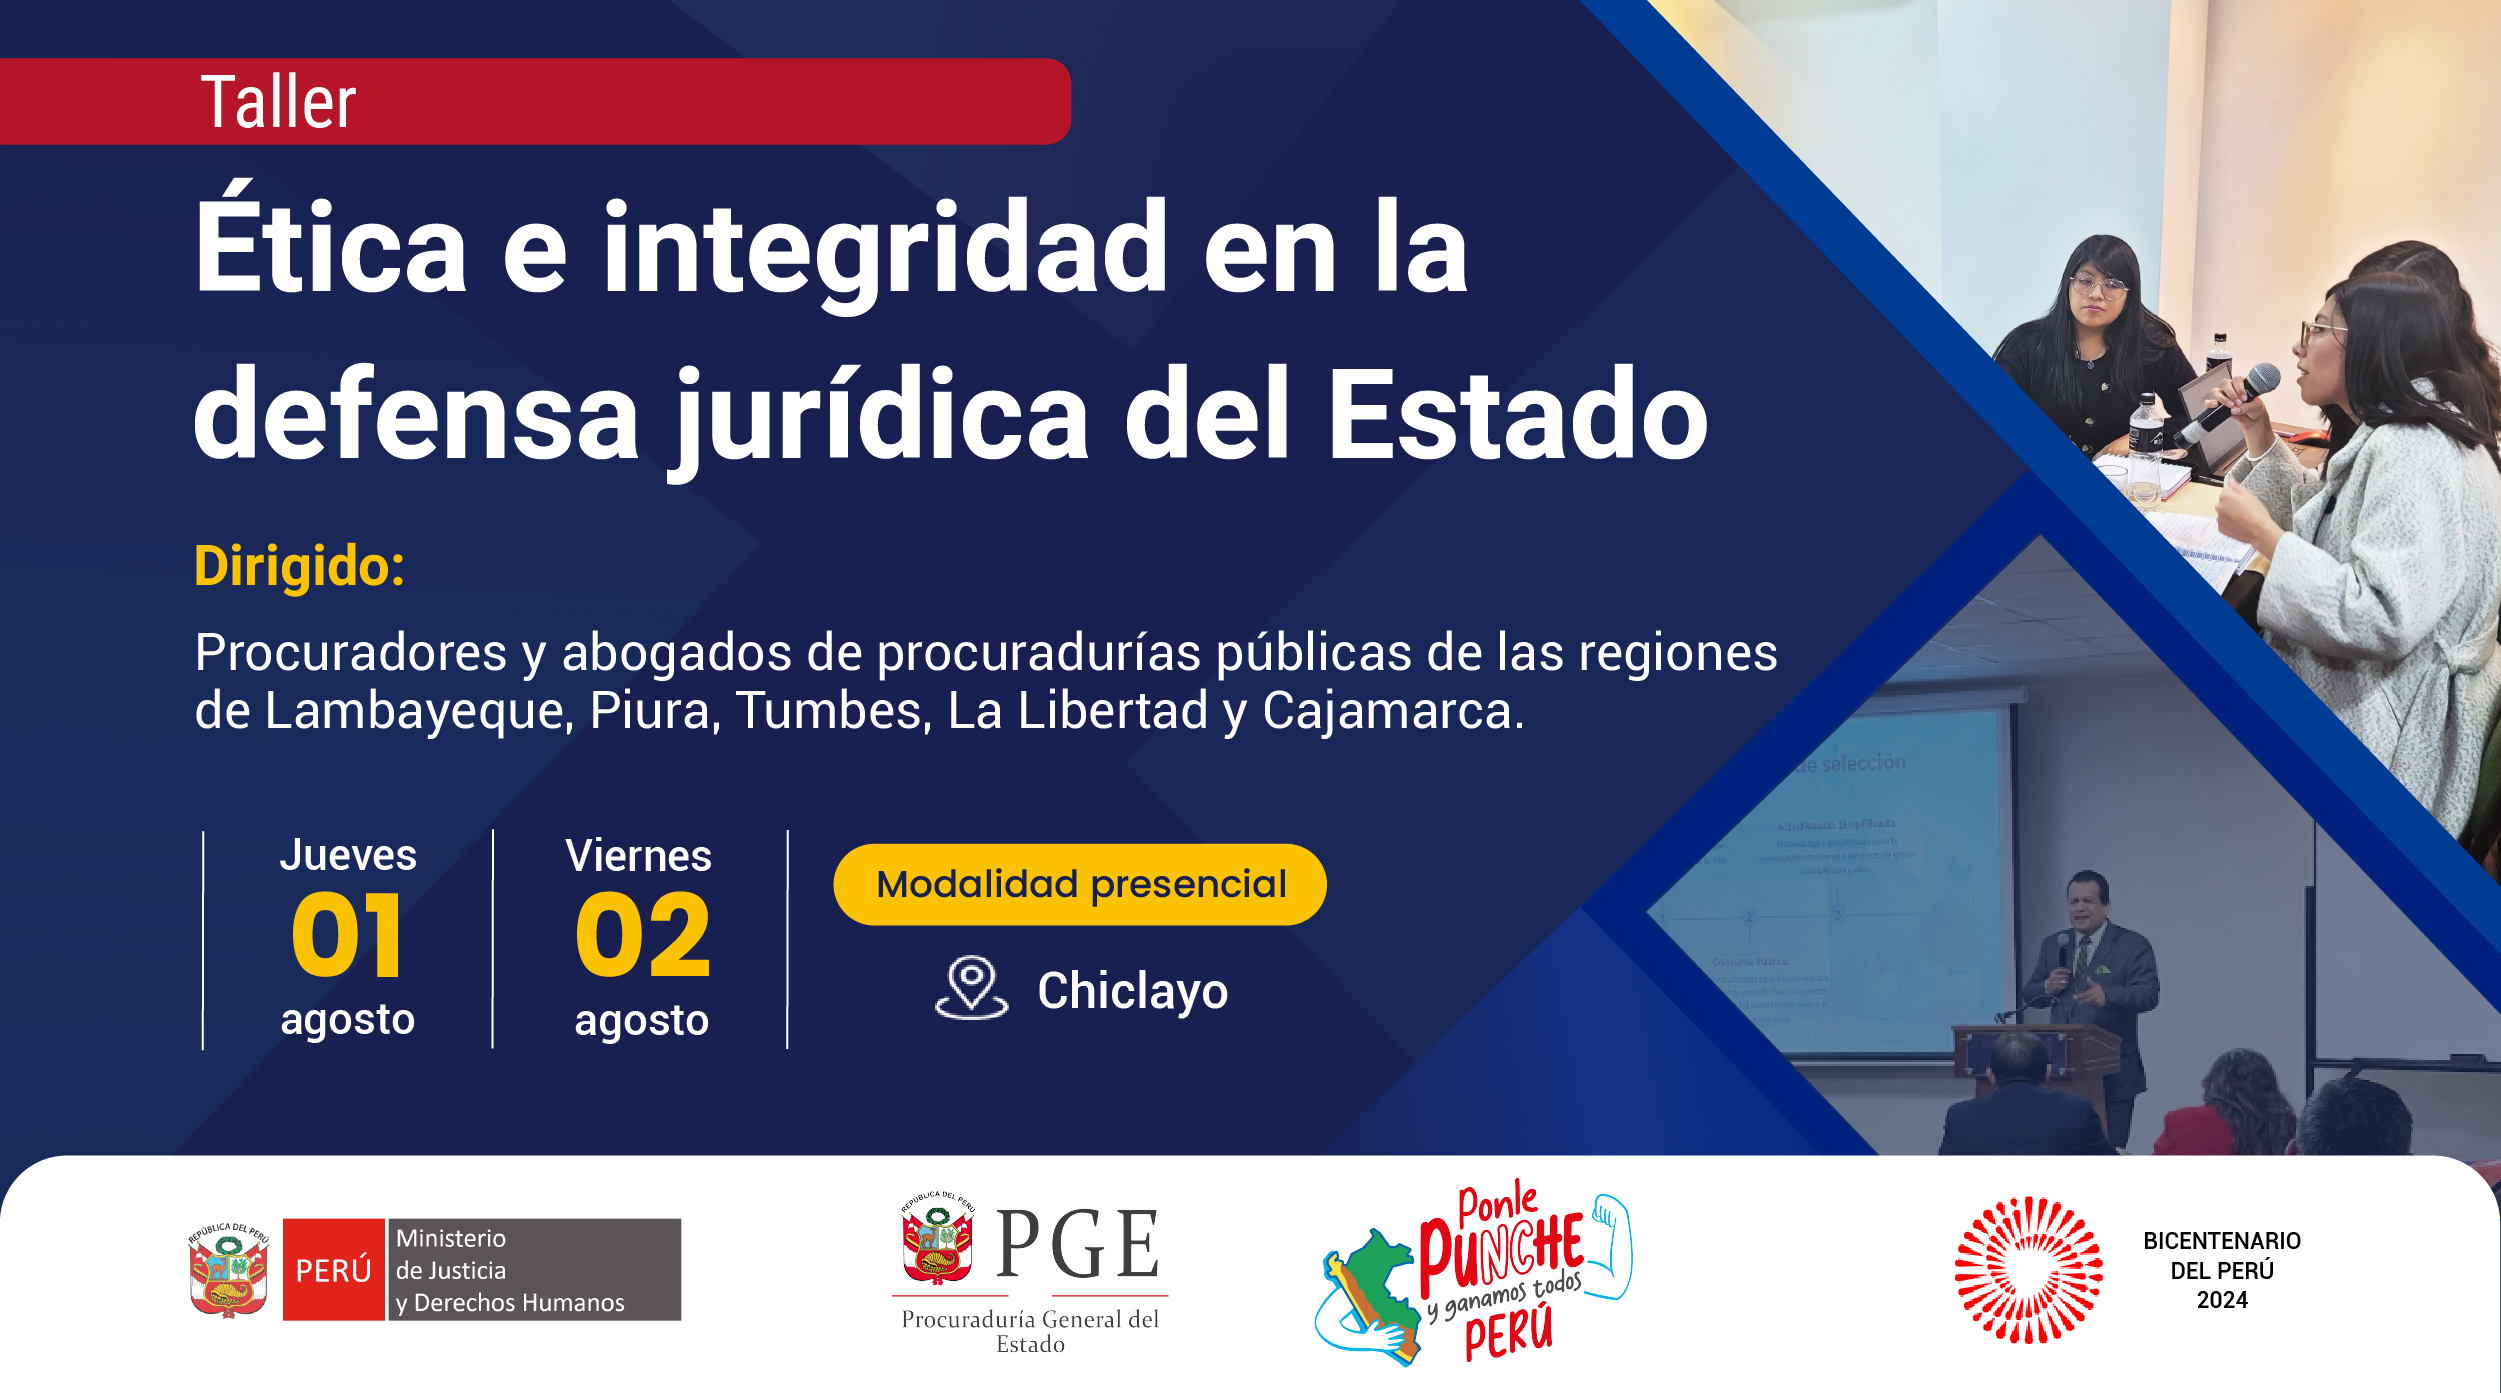 Taller - Ética e integridad en la defensa jurídica del Estado - Chiclayo